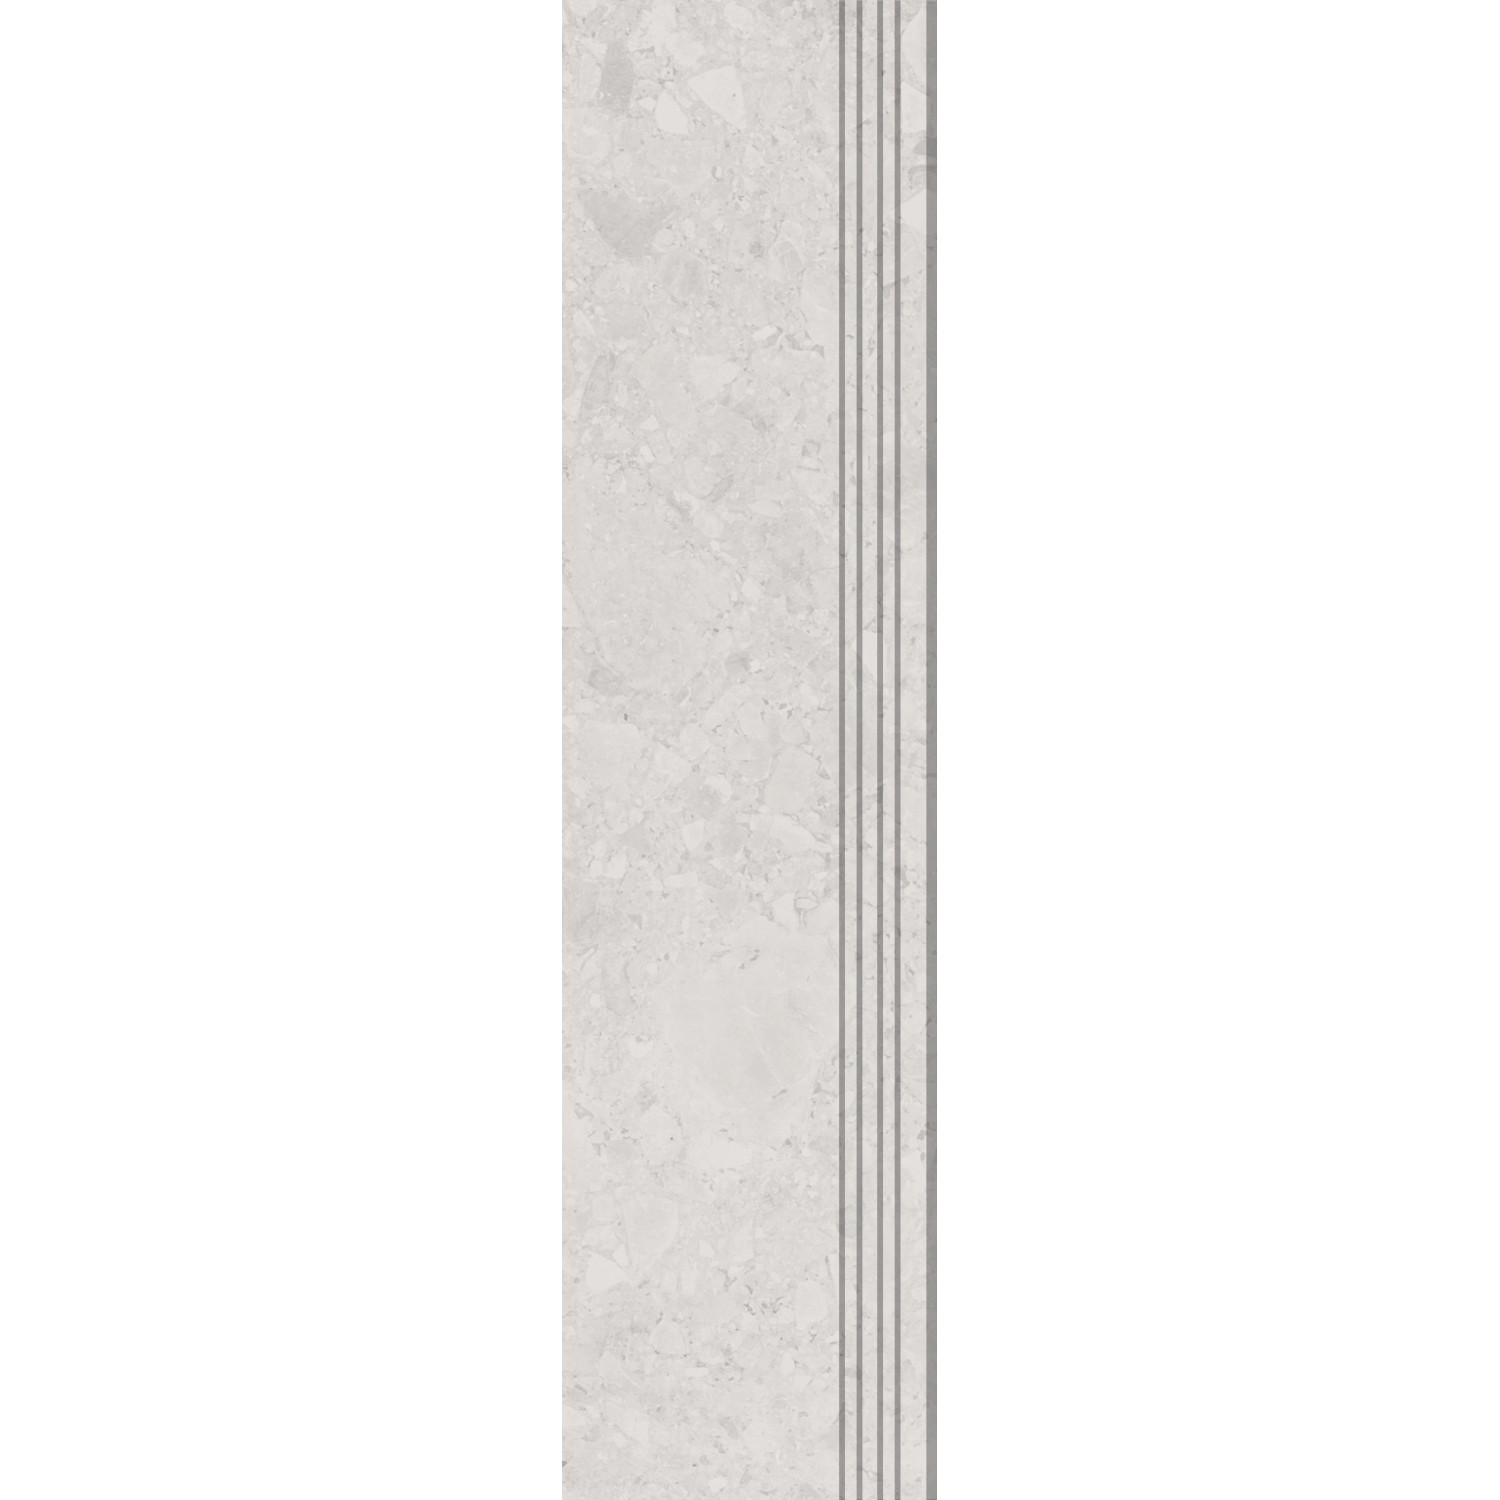 Trittstufe Feinsteinzeug Riverstone Beige  Glasiert Matt 30 cm x 120 cm